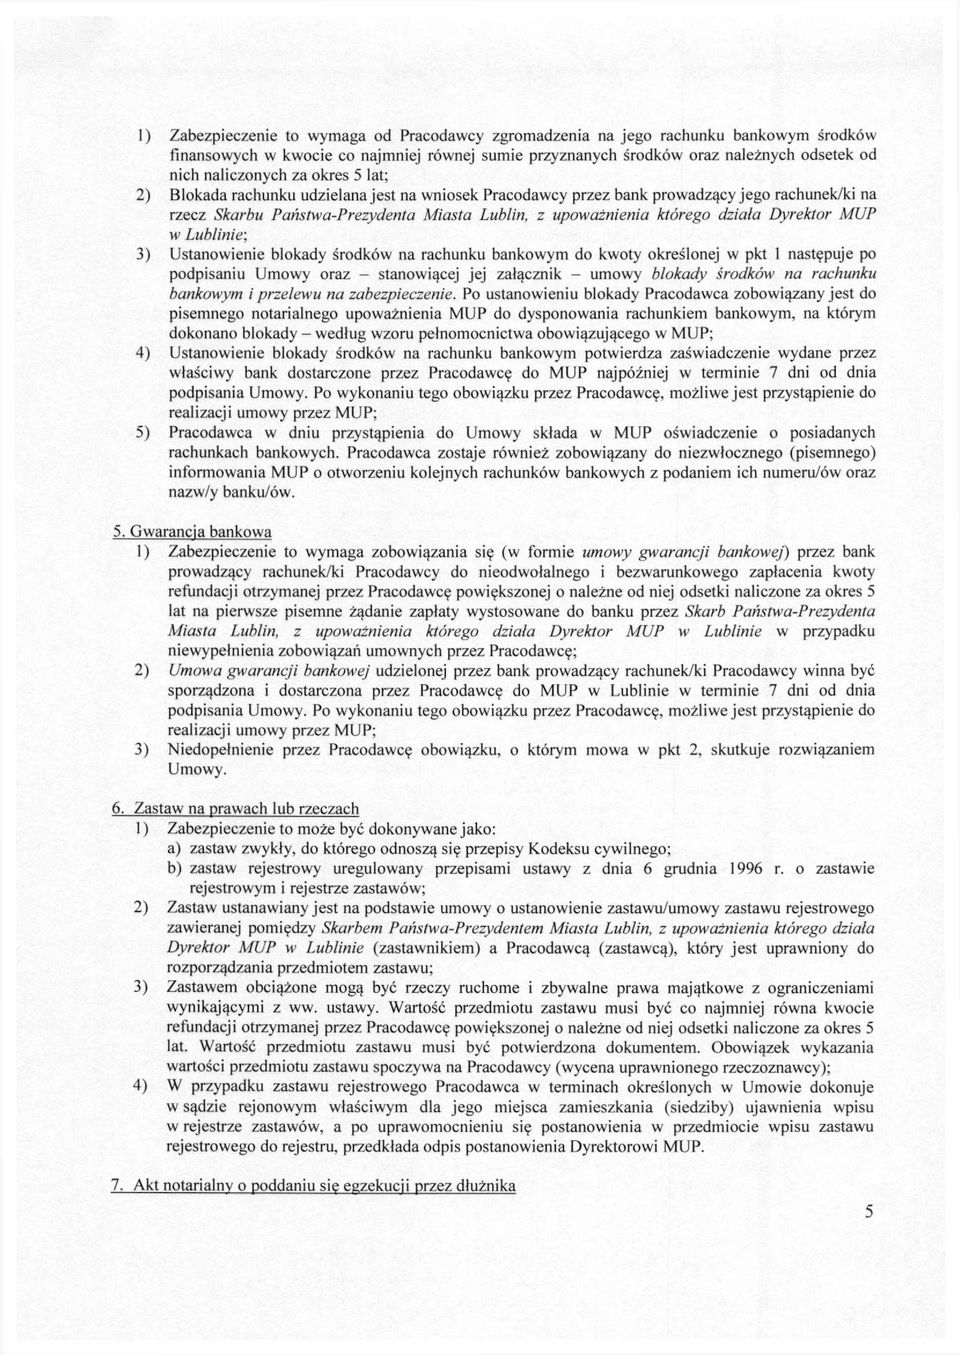 Dyrektor MUP w Lublinie; 3) Ustanowienie blokady środków na rachunku bankowym do kwoty określonej w pkt 1 następuje po podpisaniu Umowy oraz - stanowiącej jej załącznik - umowy blokady środków na